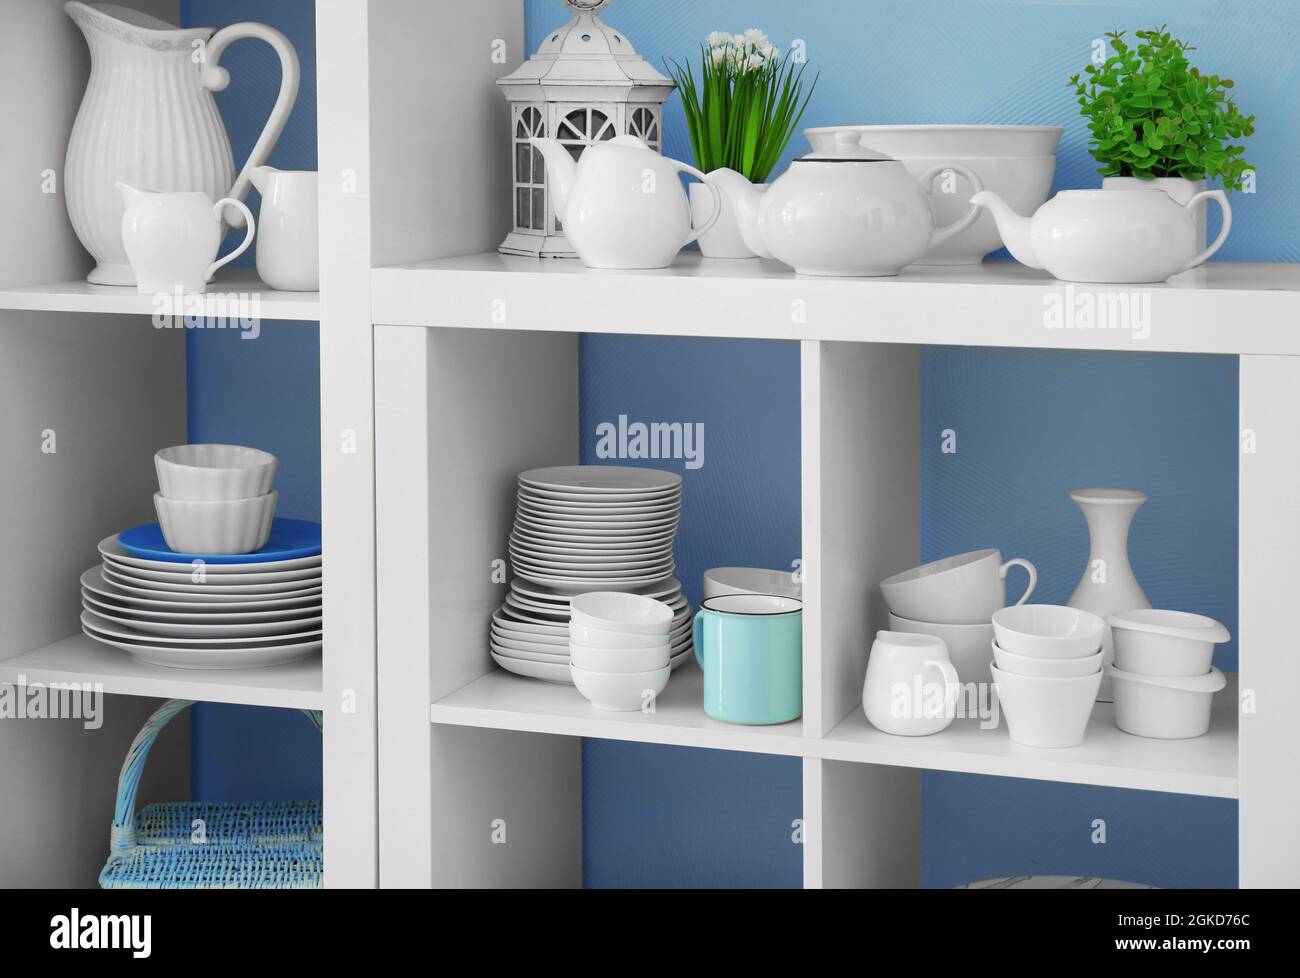 White Lagerung Ständer mit Keramik Geschirr auf farbigen Hintergrund  Stockfotografie - Alamy